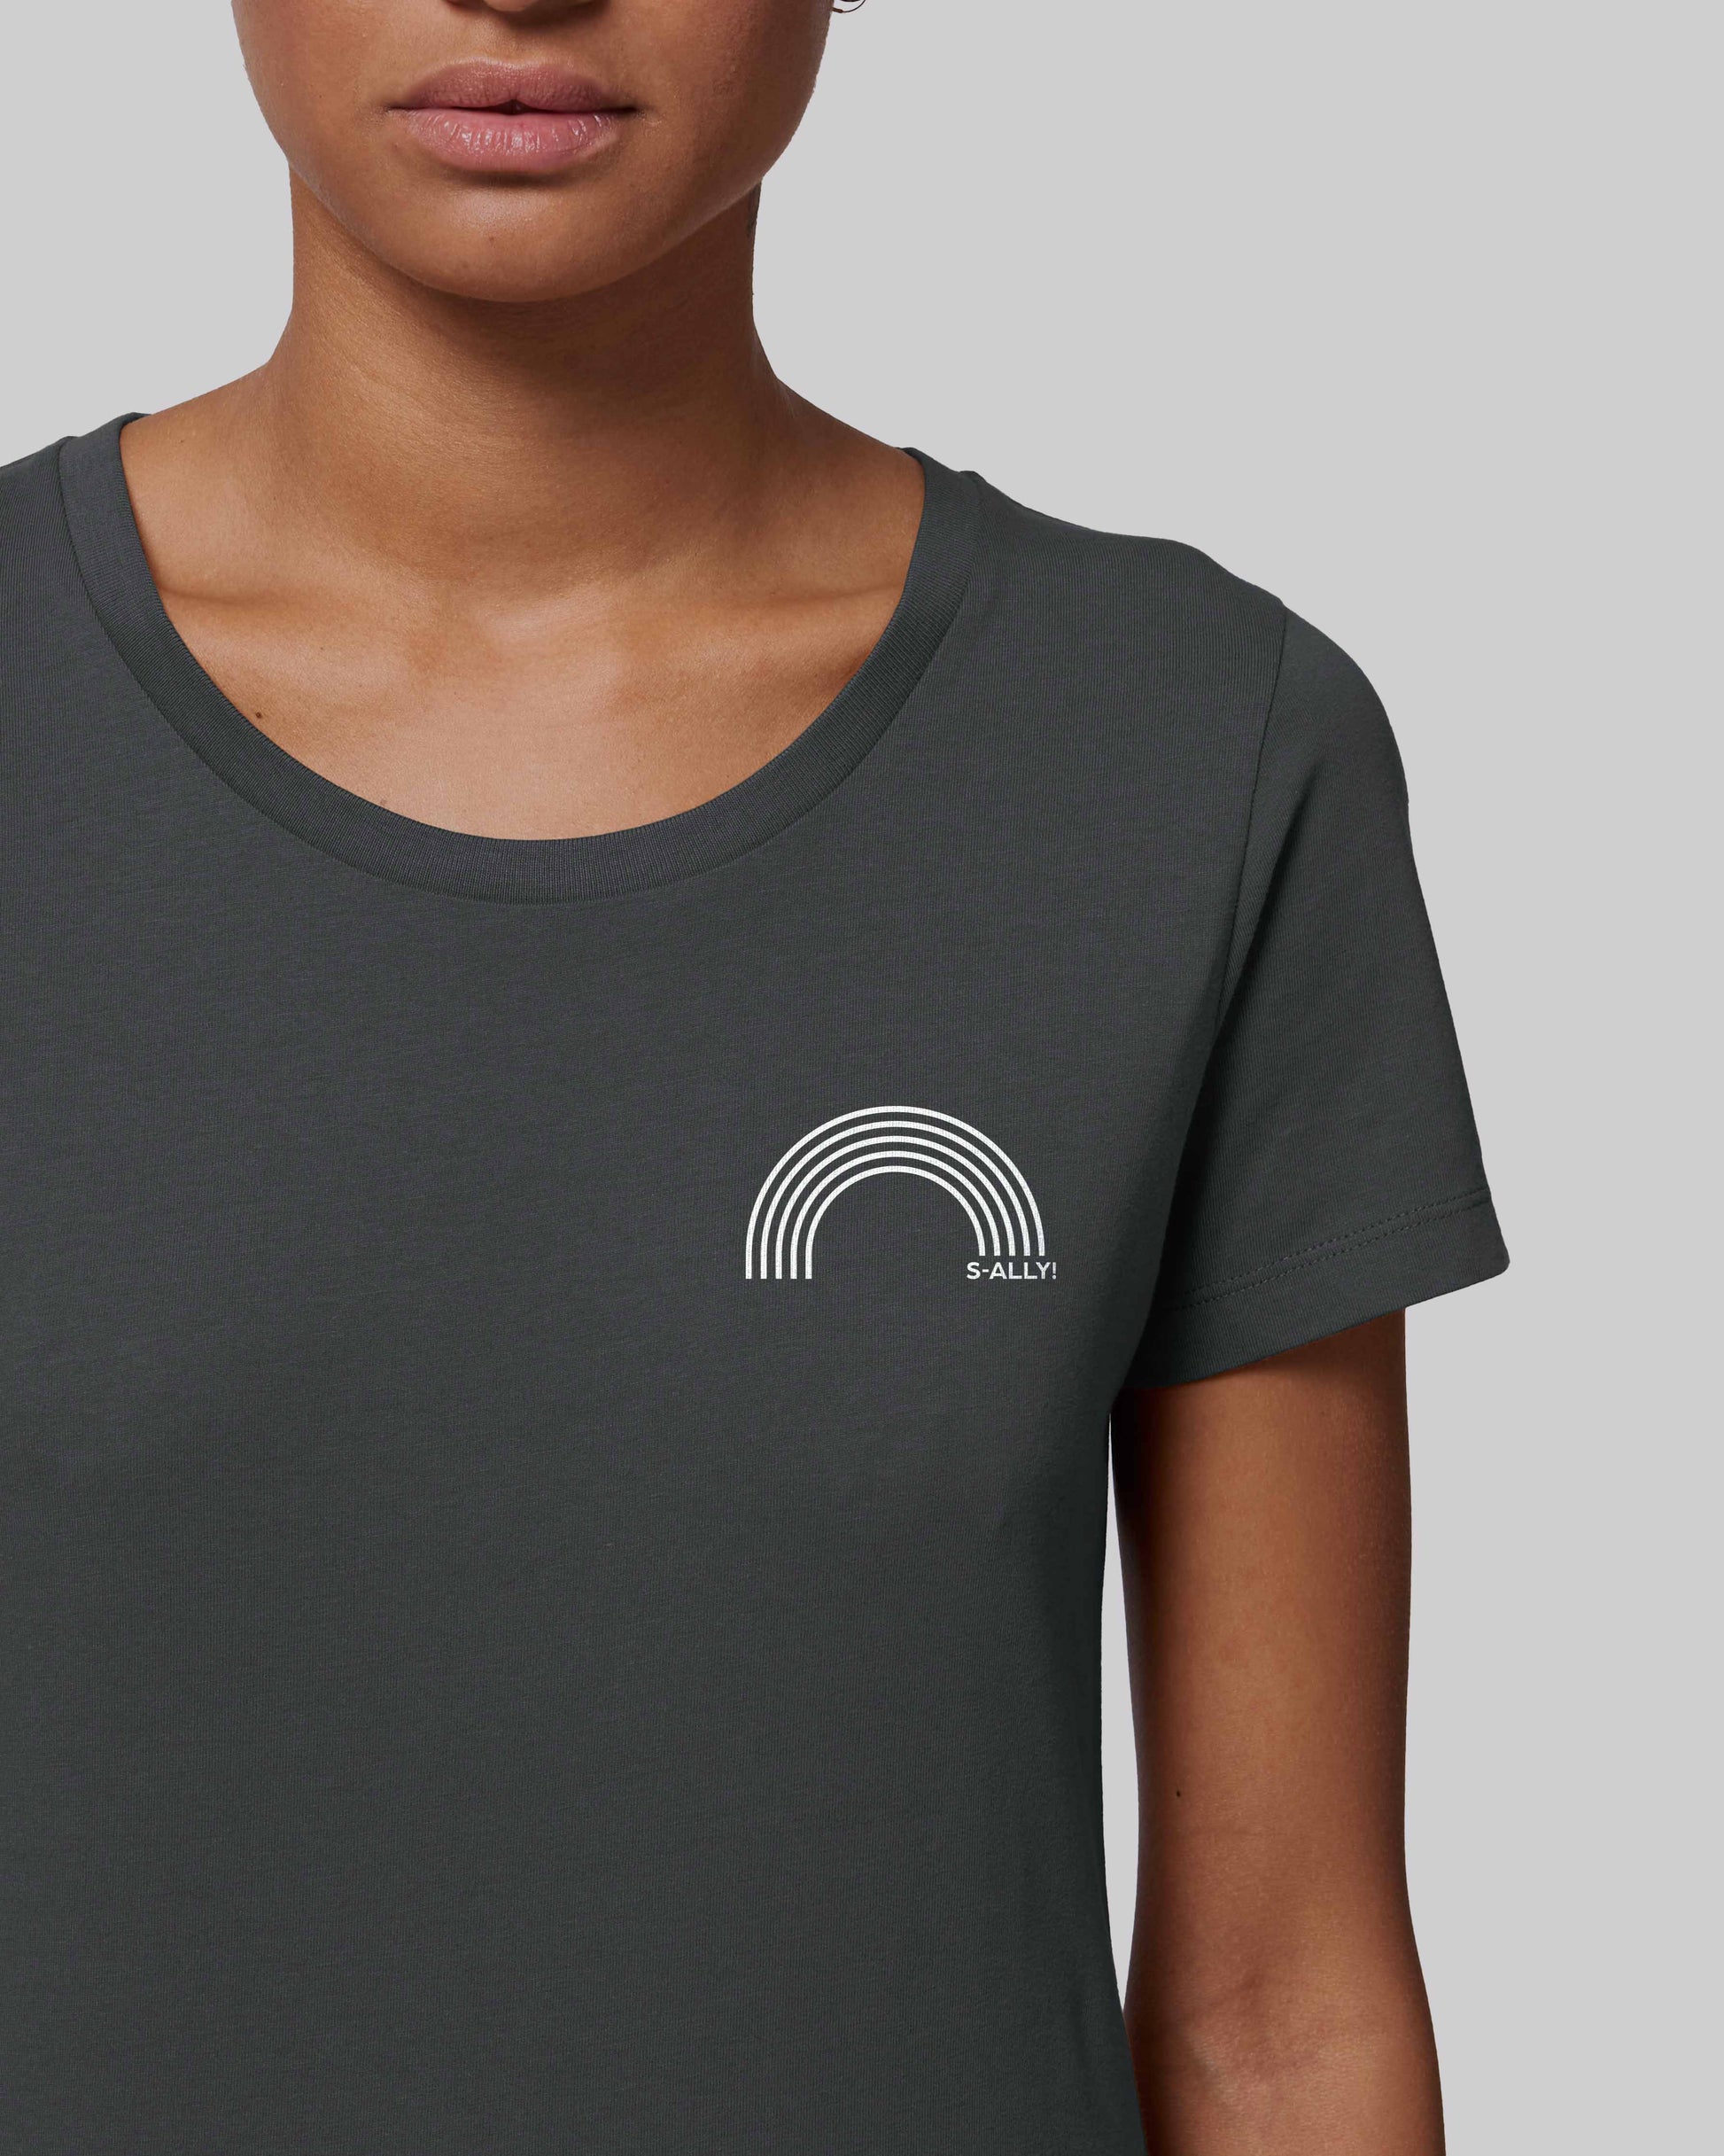 EINHORST® Organic Shirt tailliert in "Anthracite" mit dem Motiv "s-ally Regenbogen" in der Kombination weißer Regenbogen mit weißer Schrift, Bild von weiblicher Person mit Shirt